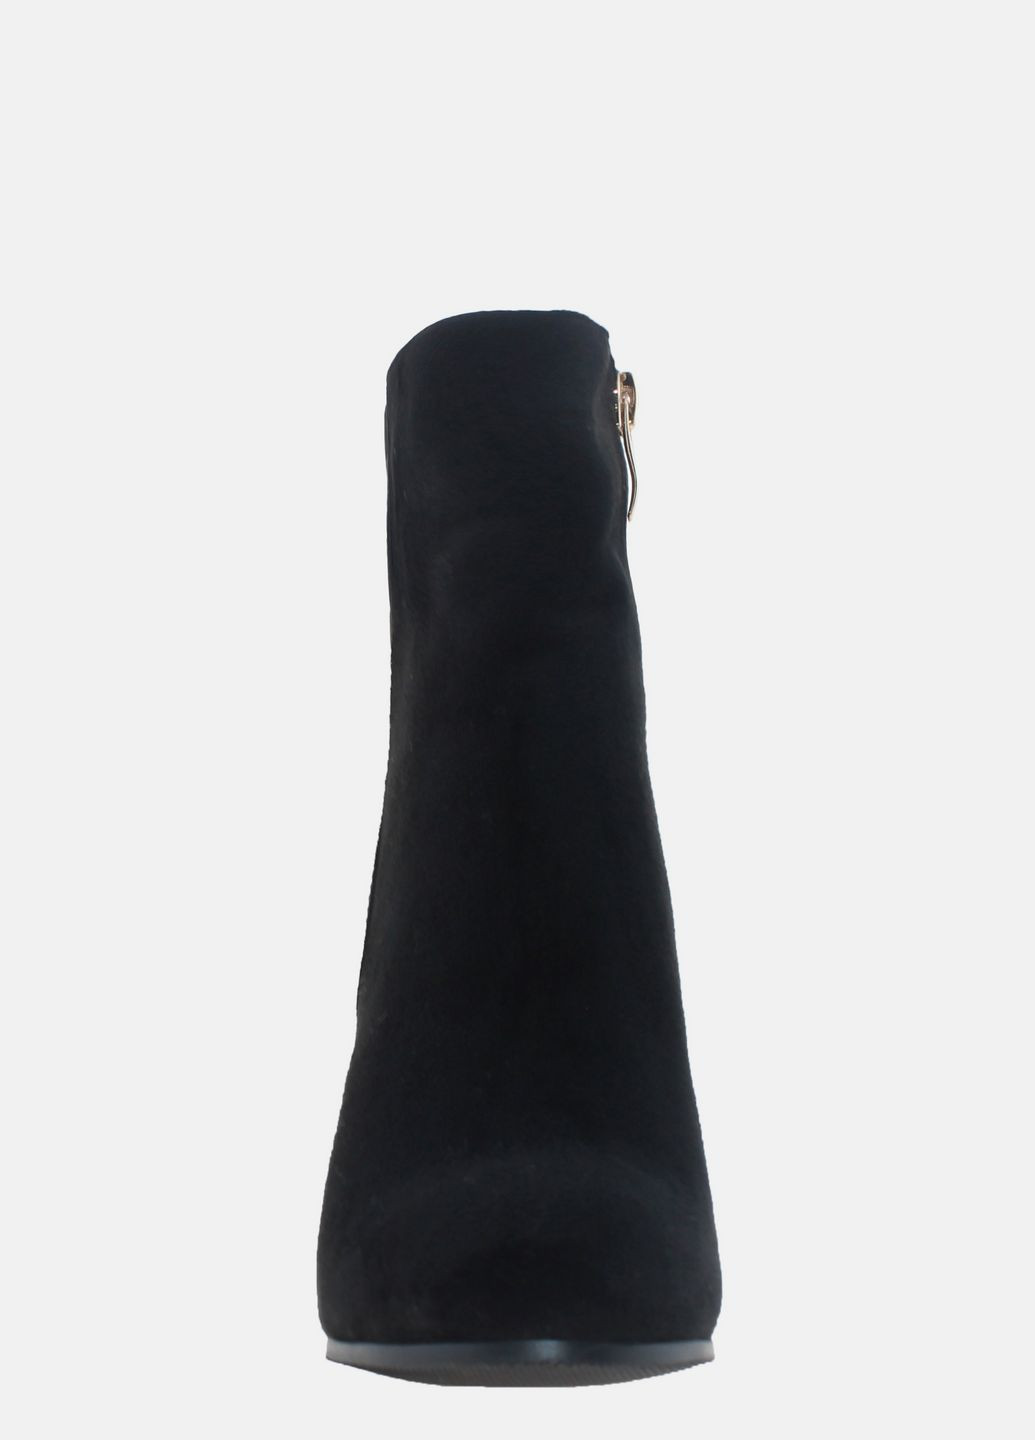 Осенние ботинки r1236-f2413 black Rusi Moni из искусственной замши